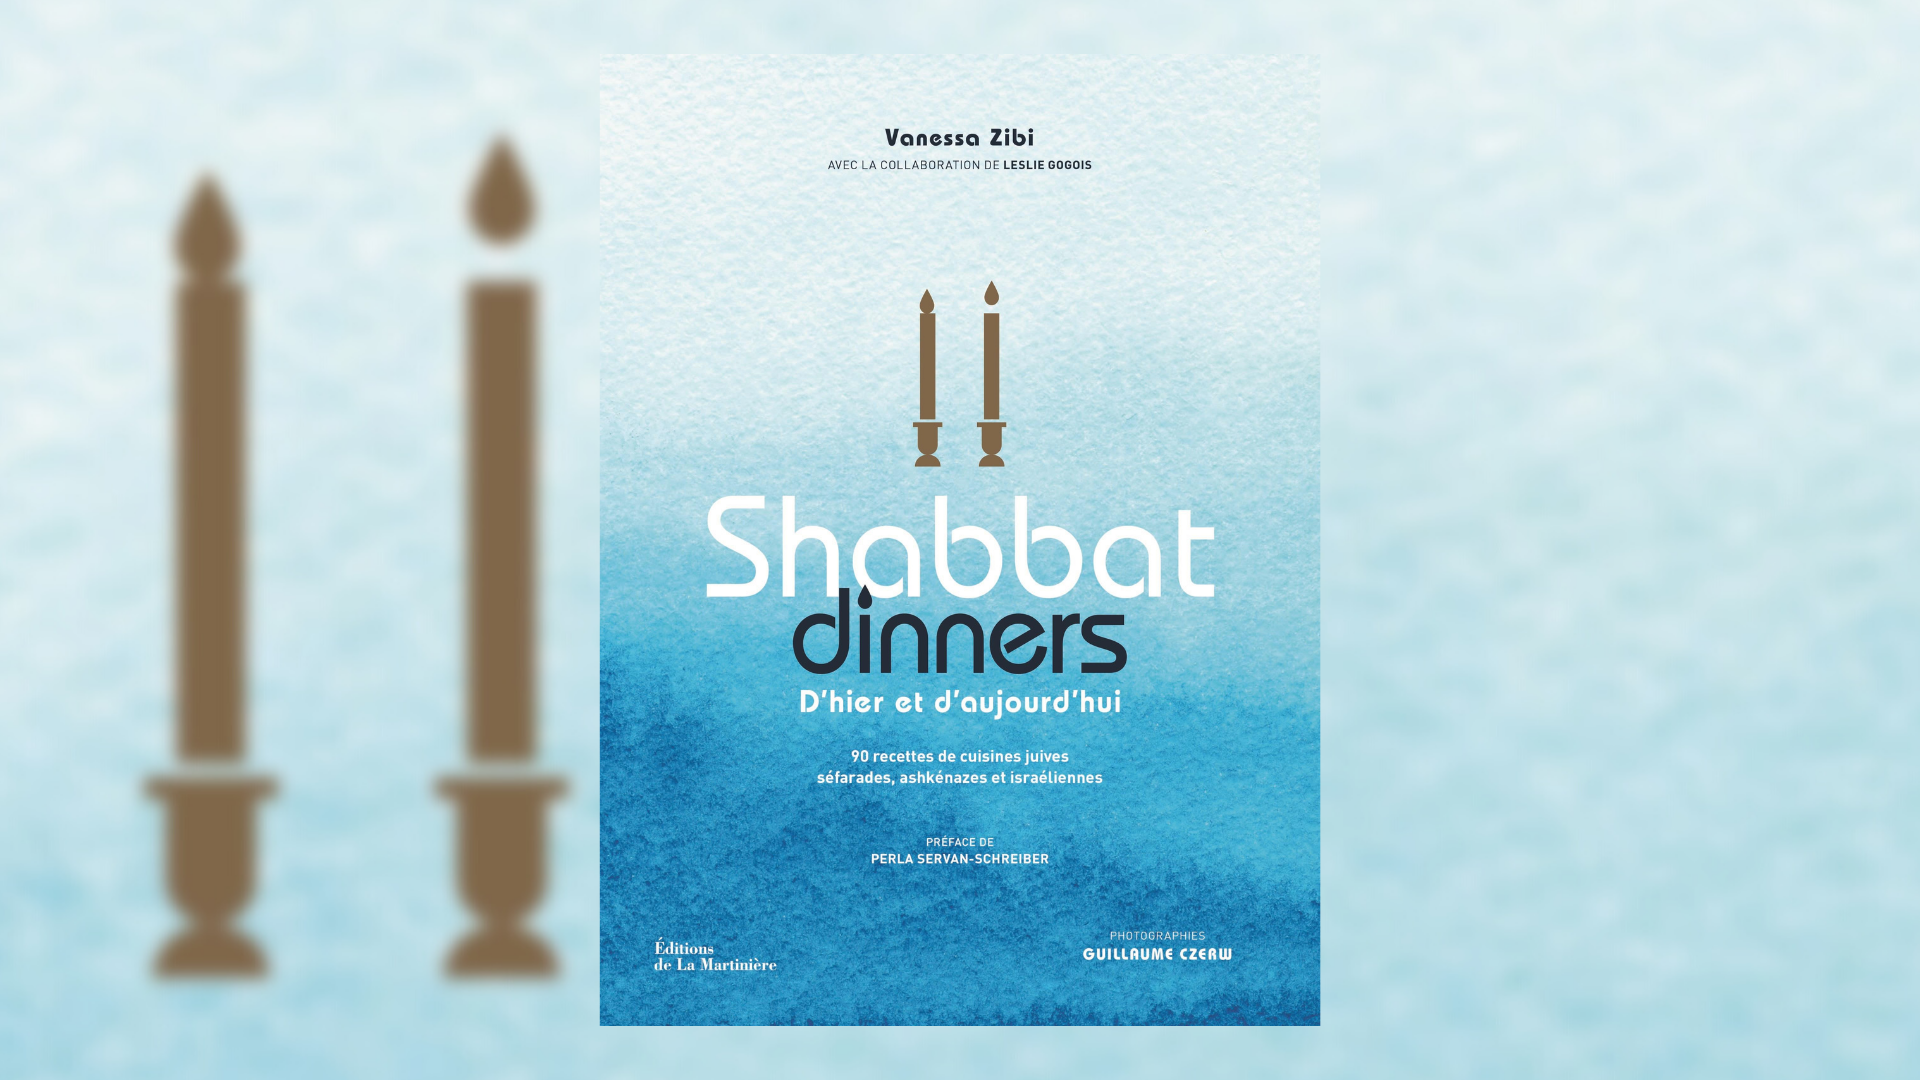 90 recettes de cuisines juives séfarades Shabbat dinners ashkénazes et israéliennes: D'hier et d'aujourd'hui ashkénazes et israéliennes 90 recettes de cuisines juives séfarades 